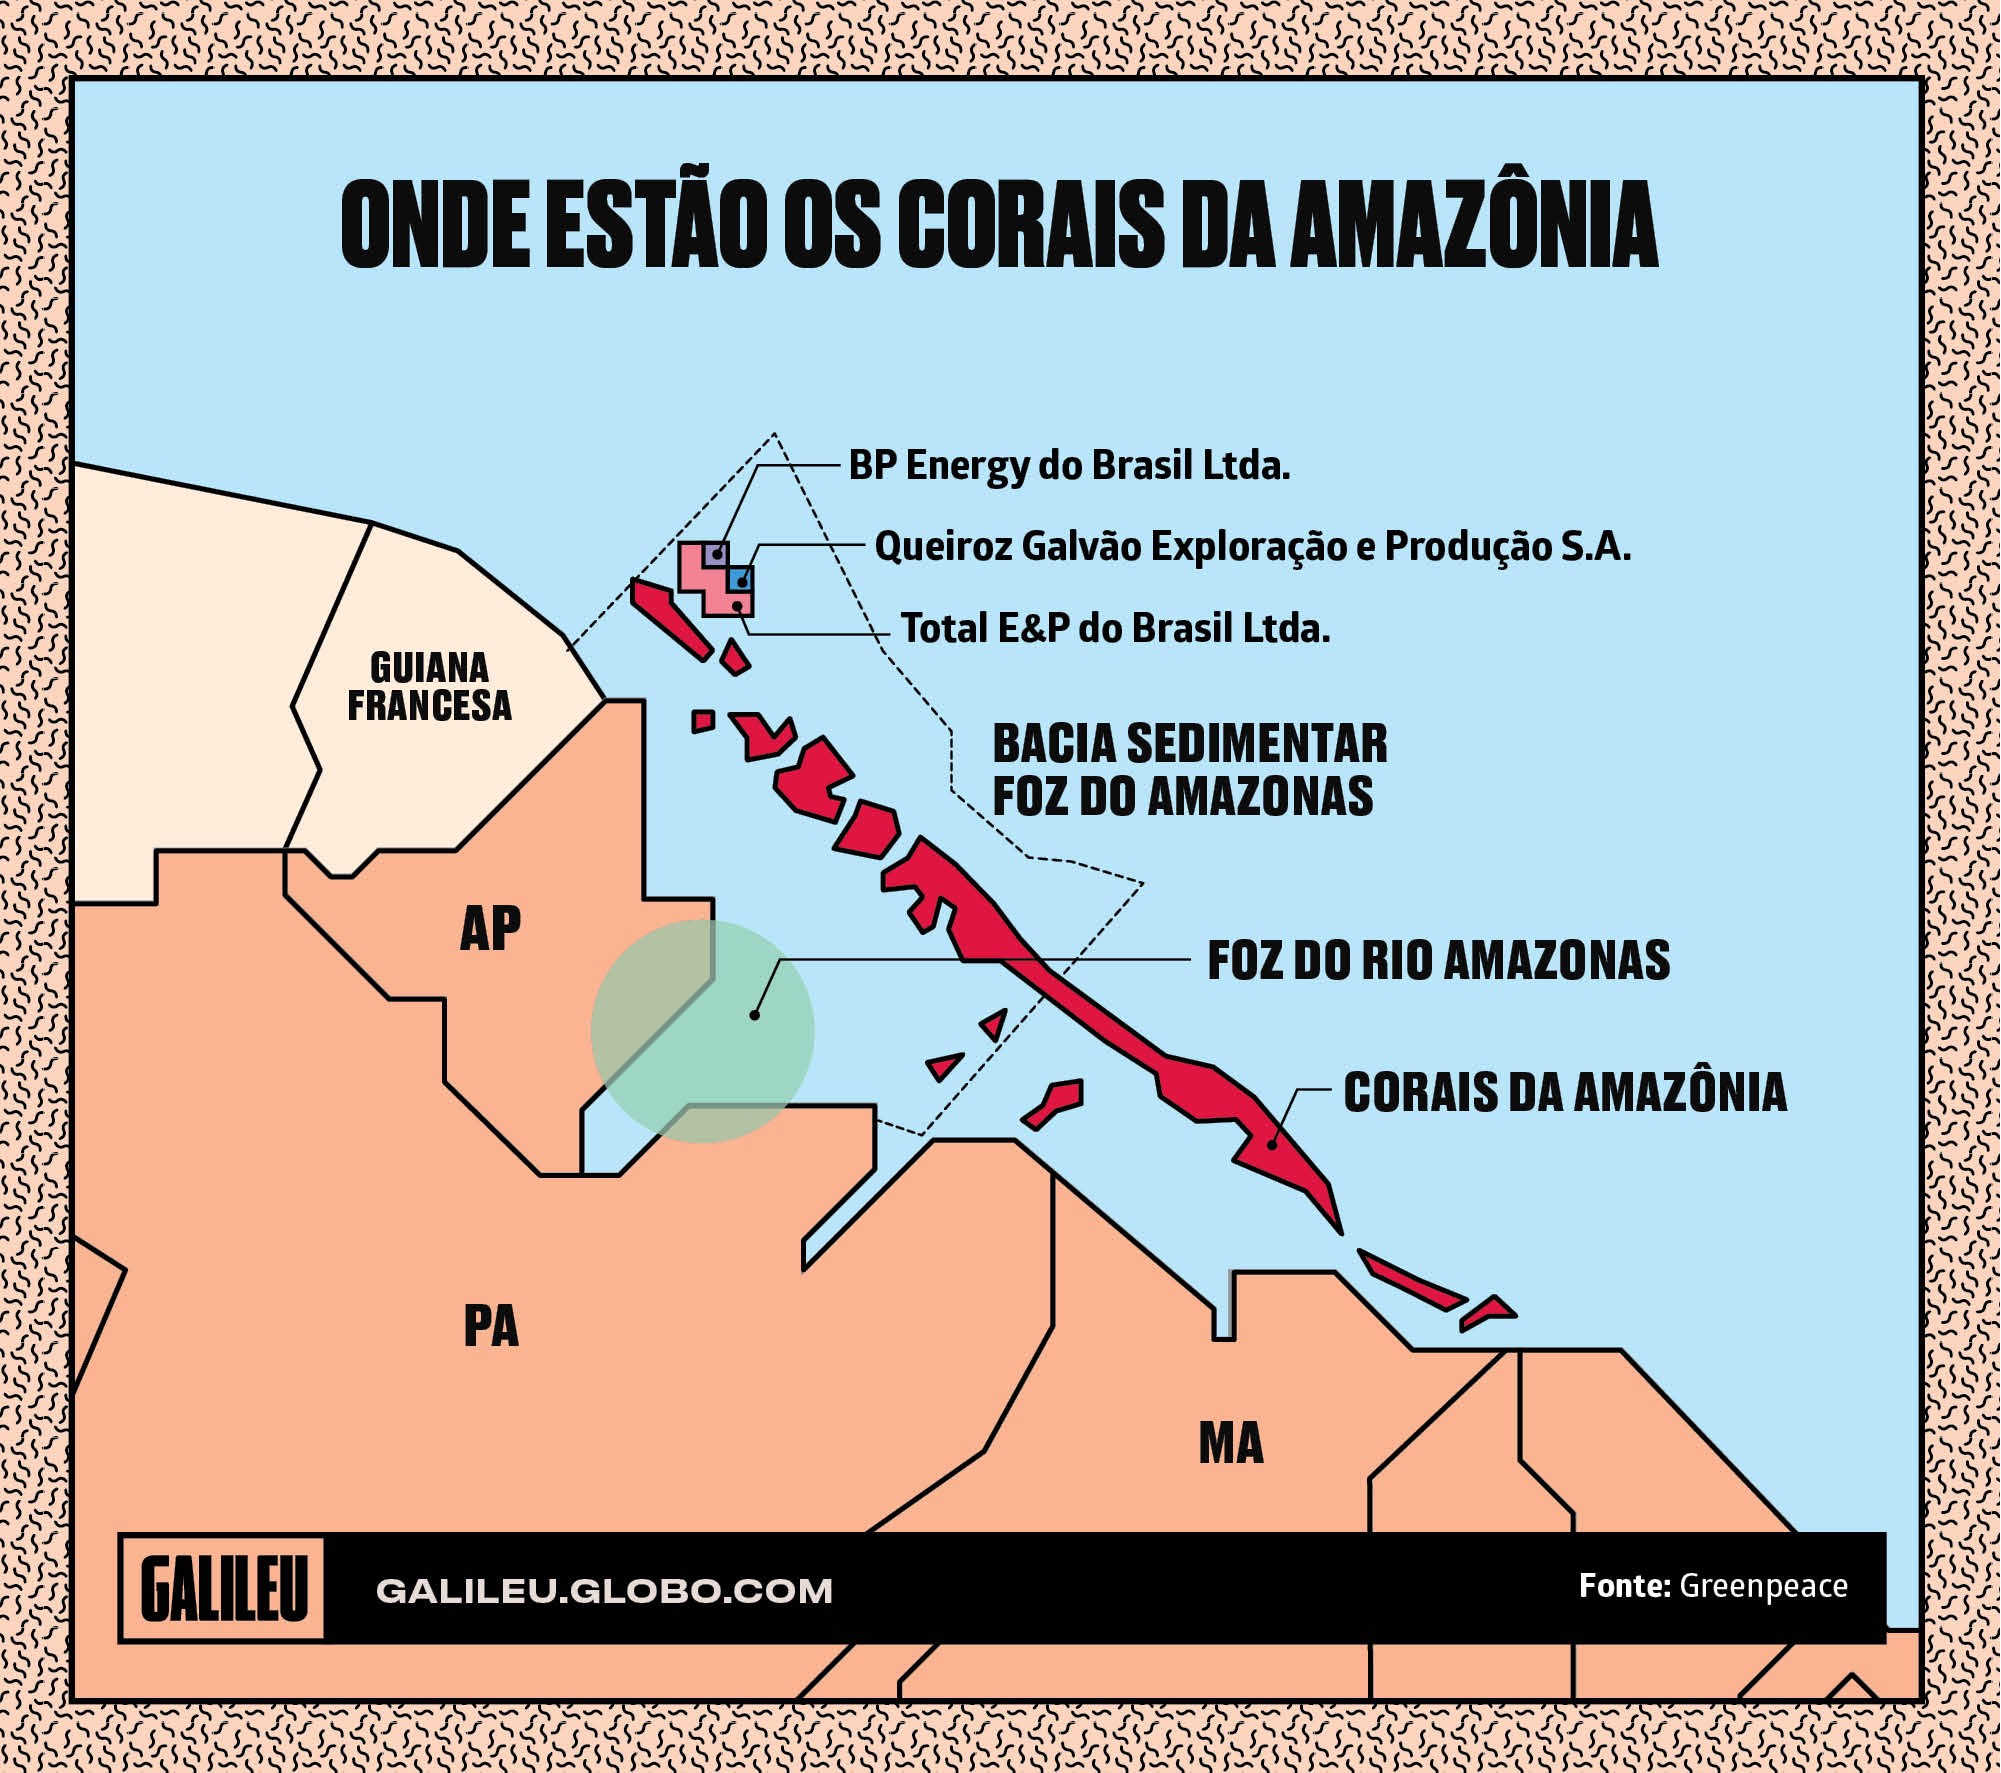 Mapa da região onde ficam os Corais da Amazônia (Foto: Galileu)